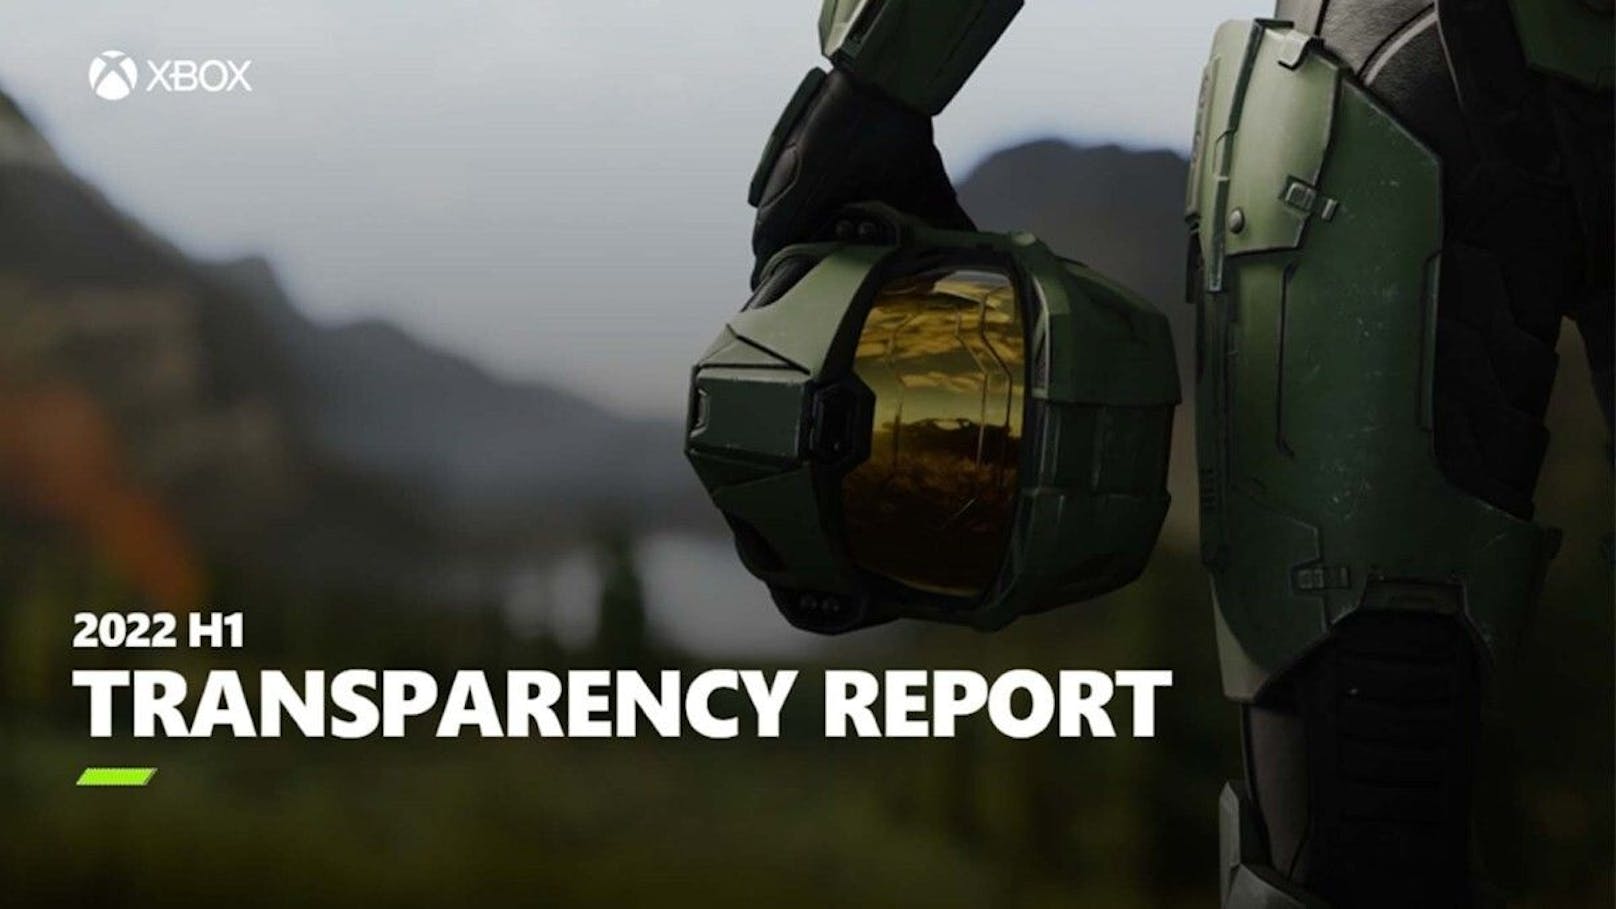 Xbox veröffentlicht erstmals Transparency Report zur Online-Sicherheit.